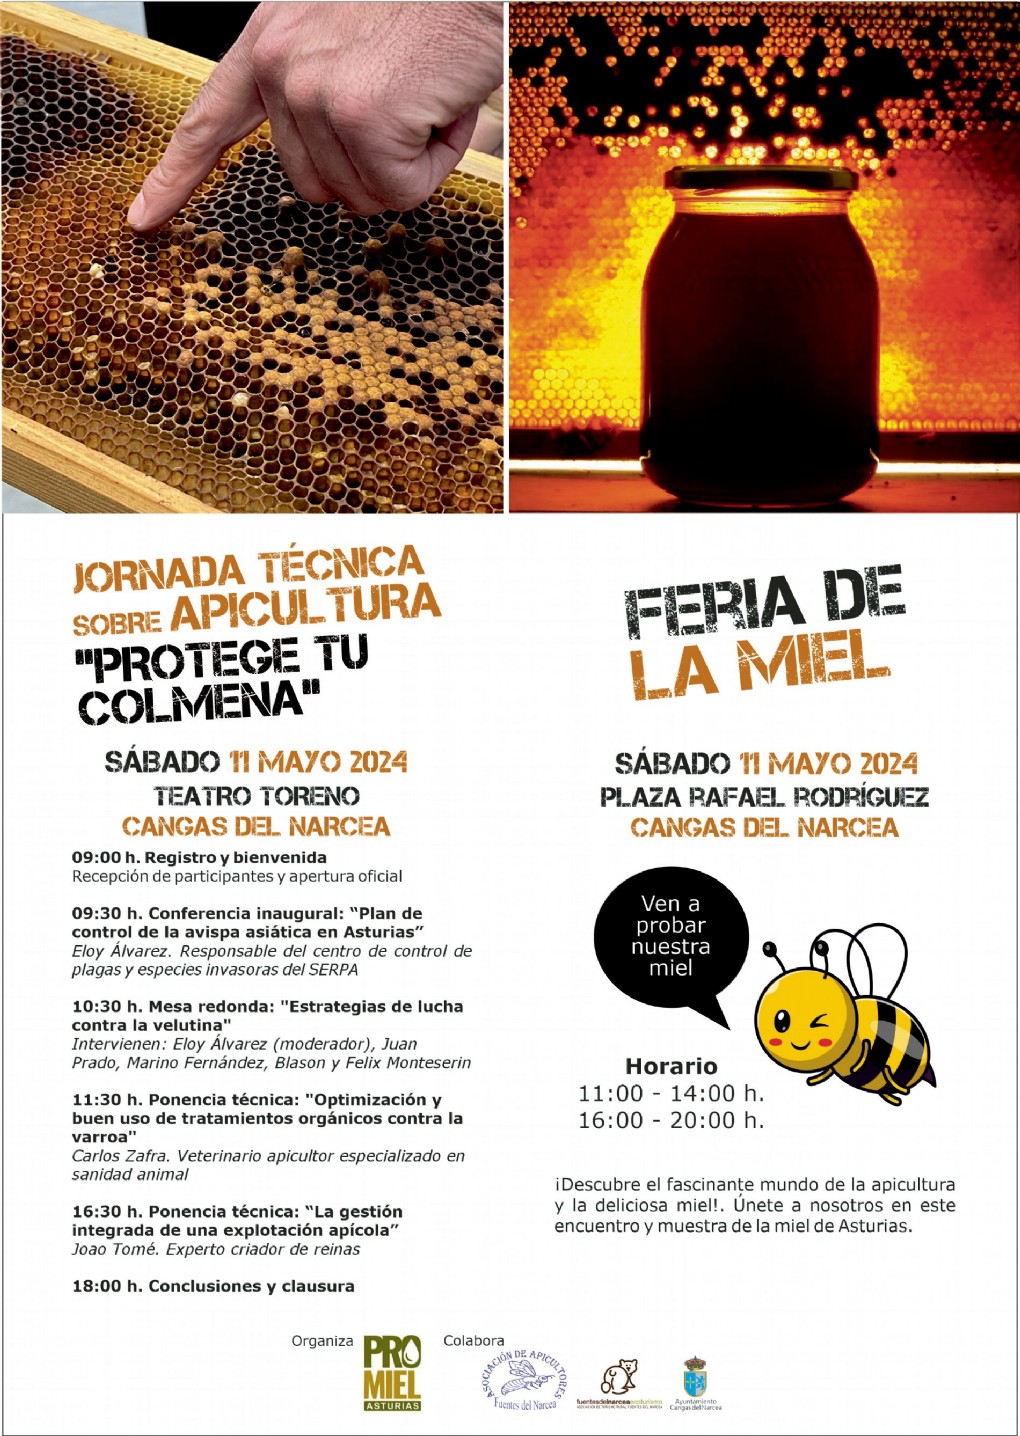 Jornada Tcnica sobre Apicultura protege tu colmena + Feria de la miel